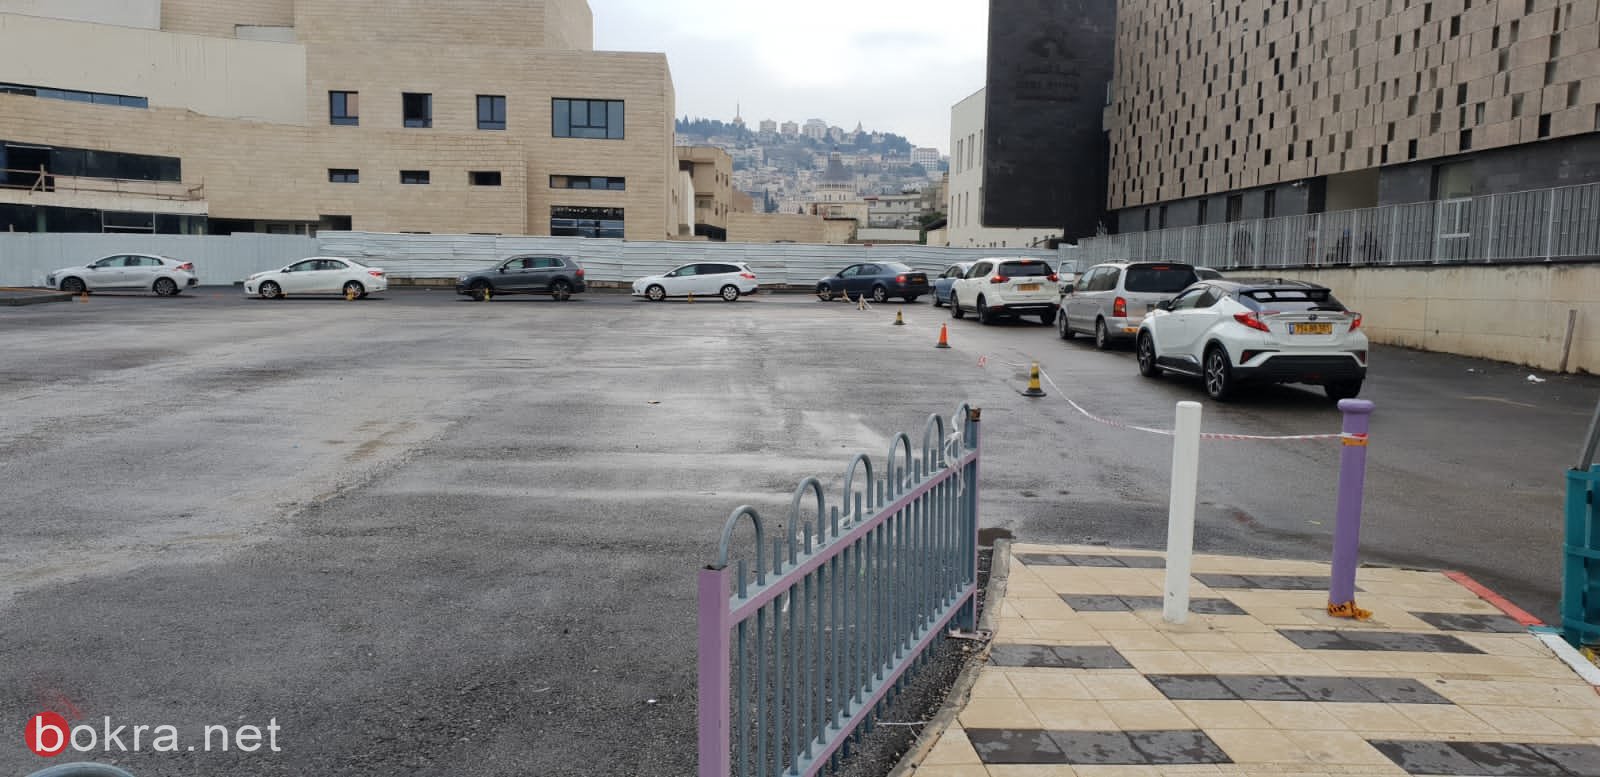 بلدية الناصرة: تعالوا لإجراء فحص الكورونا اليوم وغدًا السبت في ساحة البلدية-10